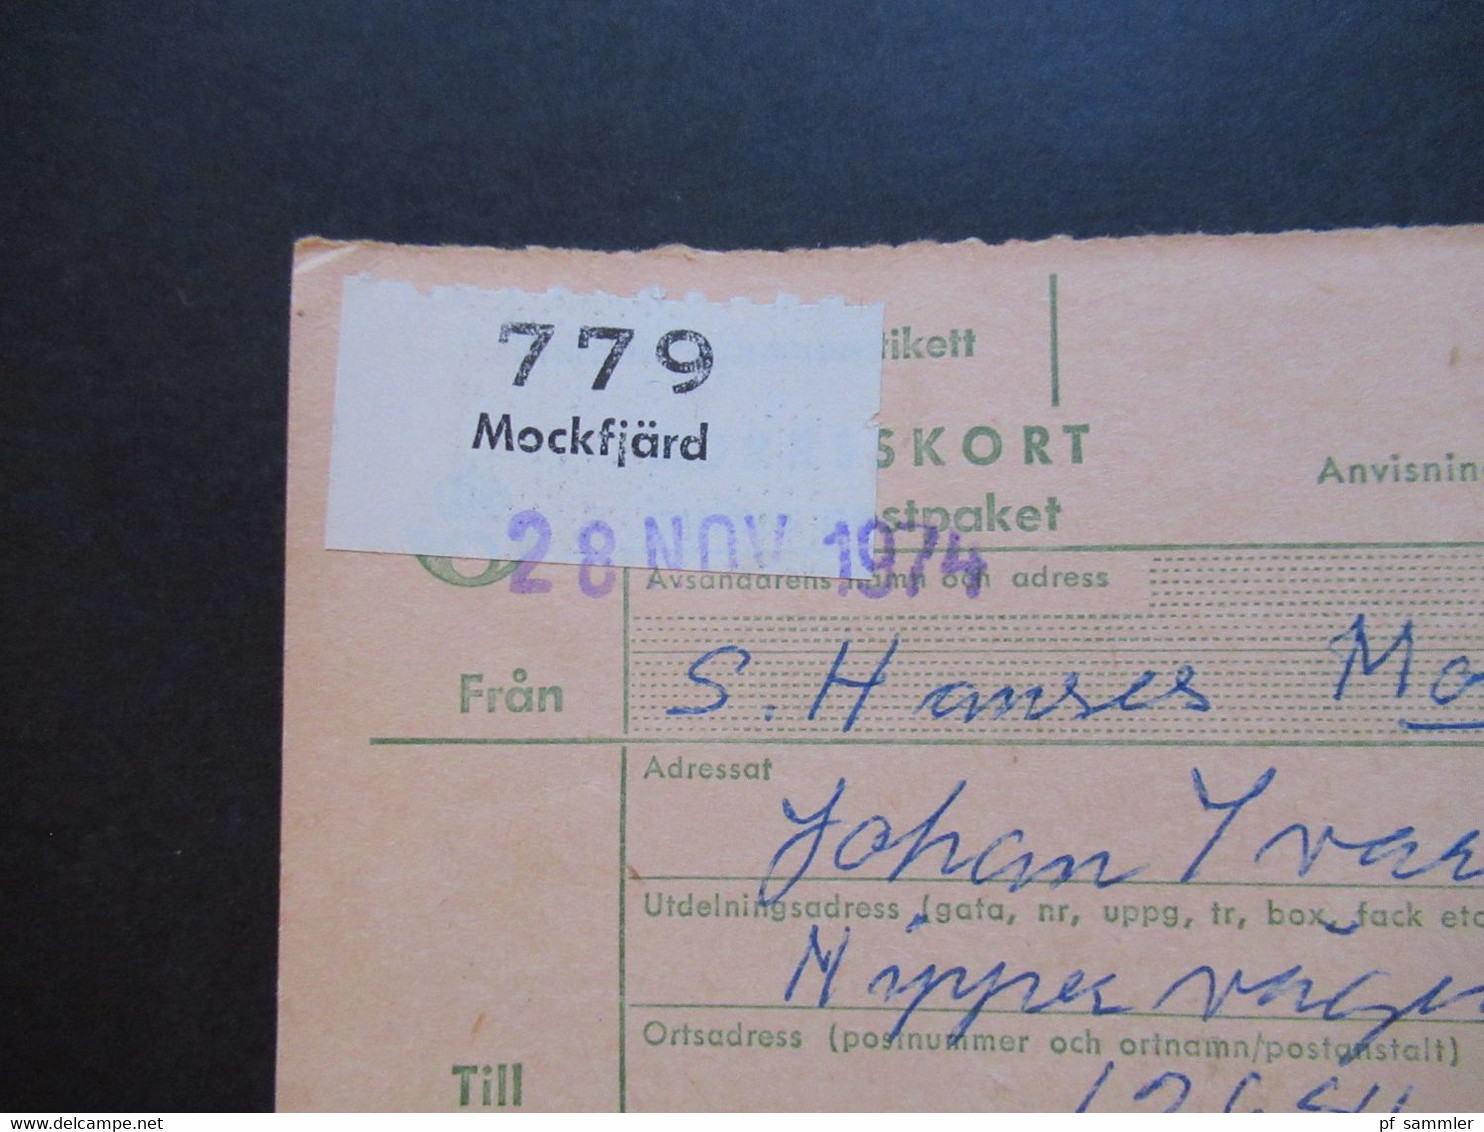 Schweden 1970 / 74 Paketkarten 7 Stück davon 2x nach England violetter Stempel Hämtas pä postanstalten Kristallvägen 1